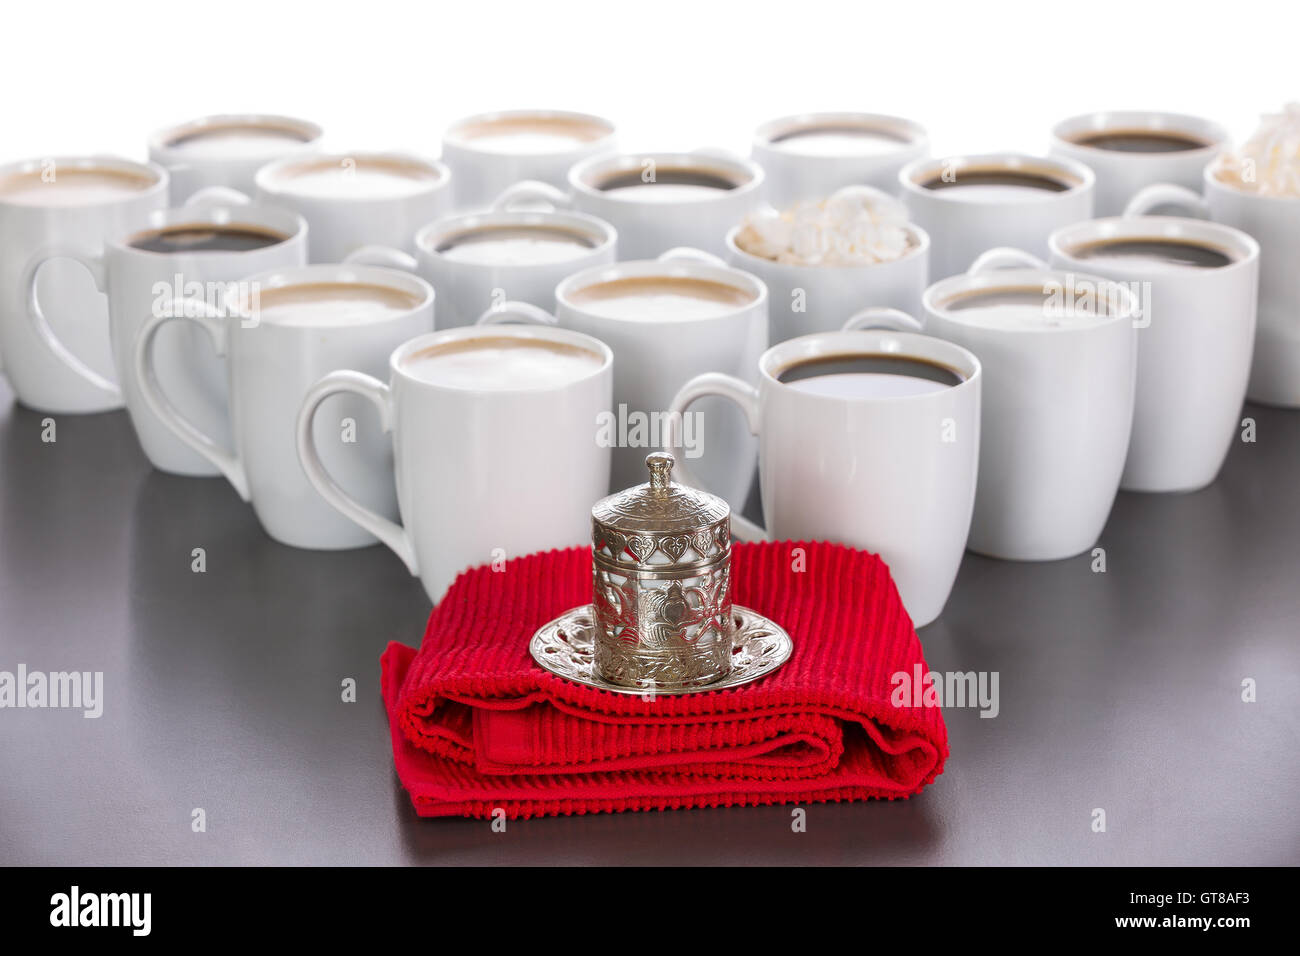 Roi de la notion de café avec une petite tasse de café turc dans une tasse recouverte de métal traditionnel debout sur un tissu rouge en face Banque D'Images